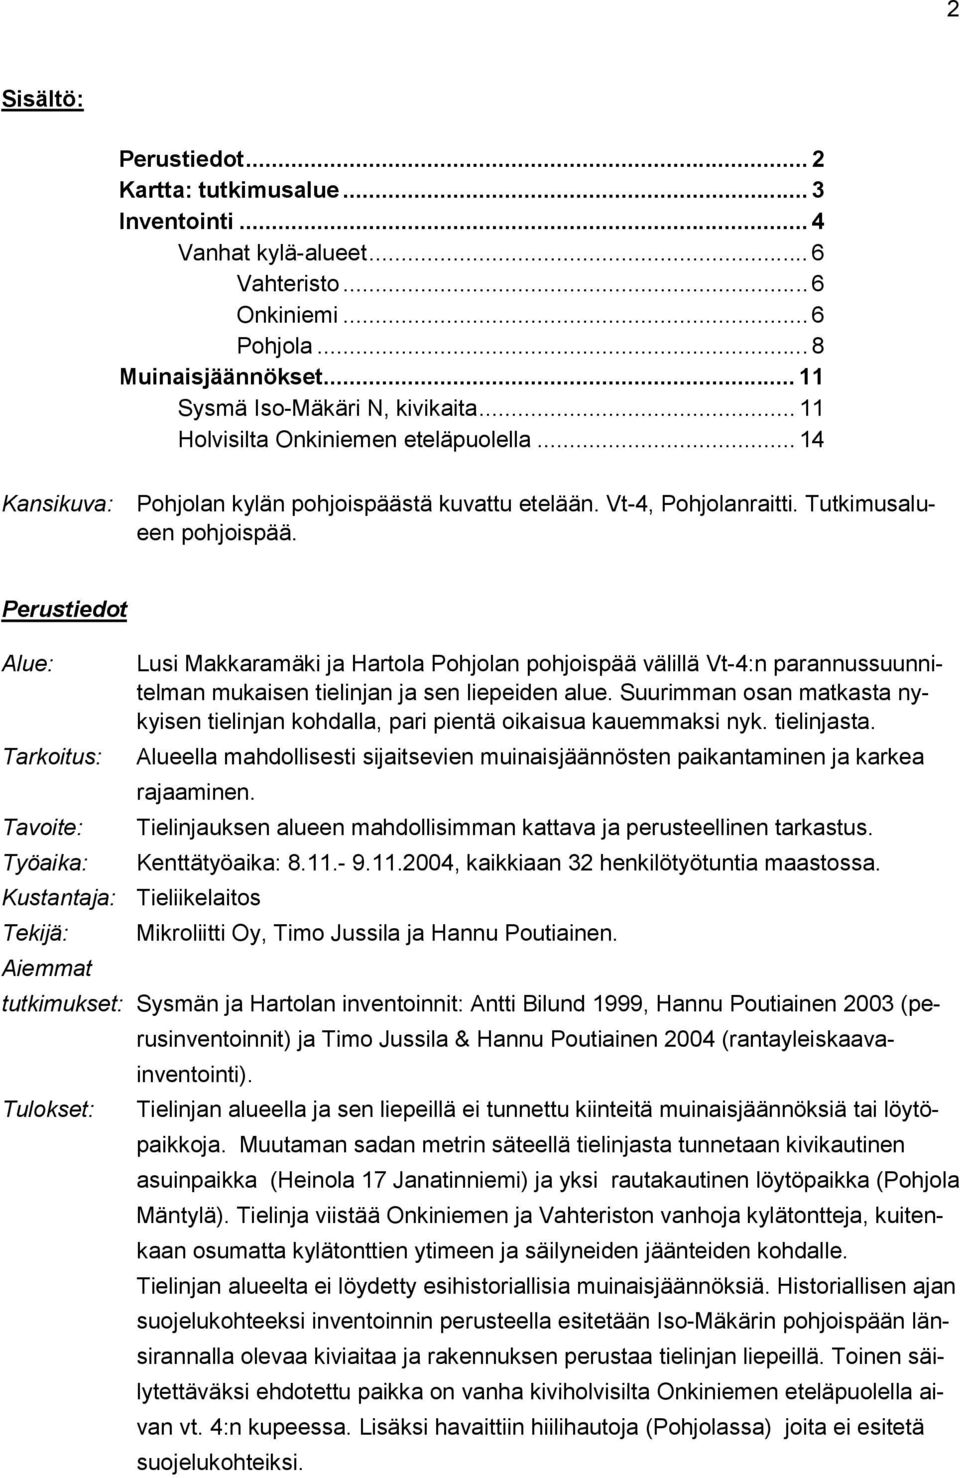 Perustiedot Alue: Lusi Makkaramäki ja Hartola Pohjolan pohjoispää välillä Vt-4:n parannussuunnitelman mukaisen tielinjan ja sen liepeiden alue.